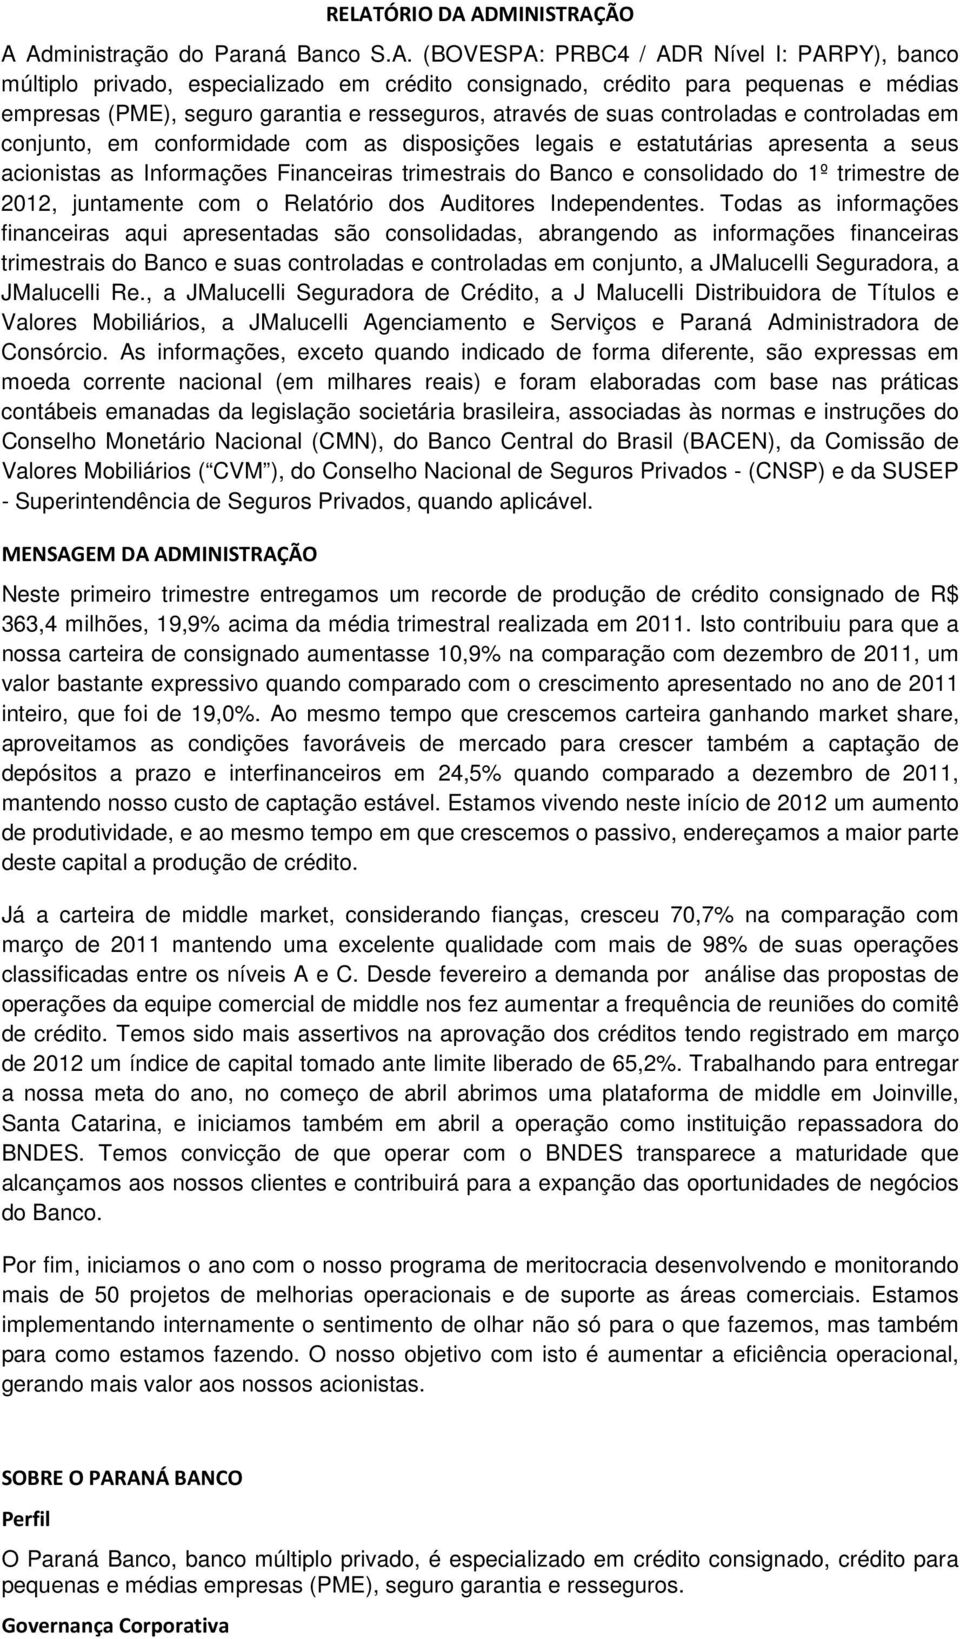 Informações Financeiras trimestrais do Banco e consolidado do 1º trimestre de 2012, juntamente com o Relatório dos Auditores Independentes.